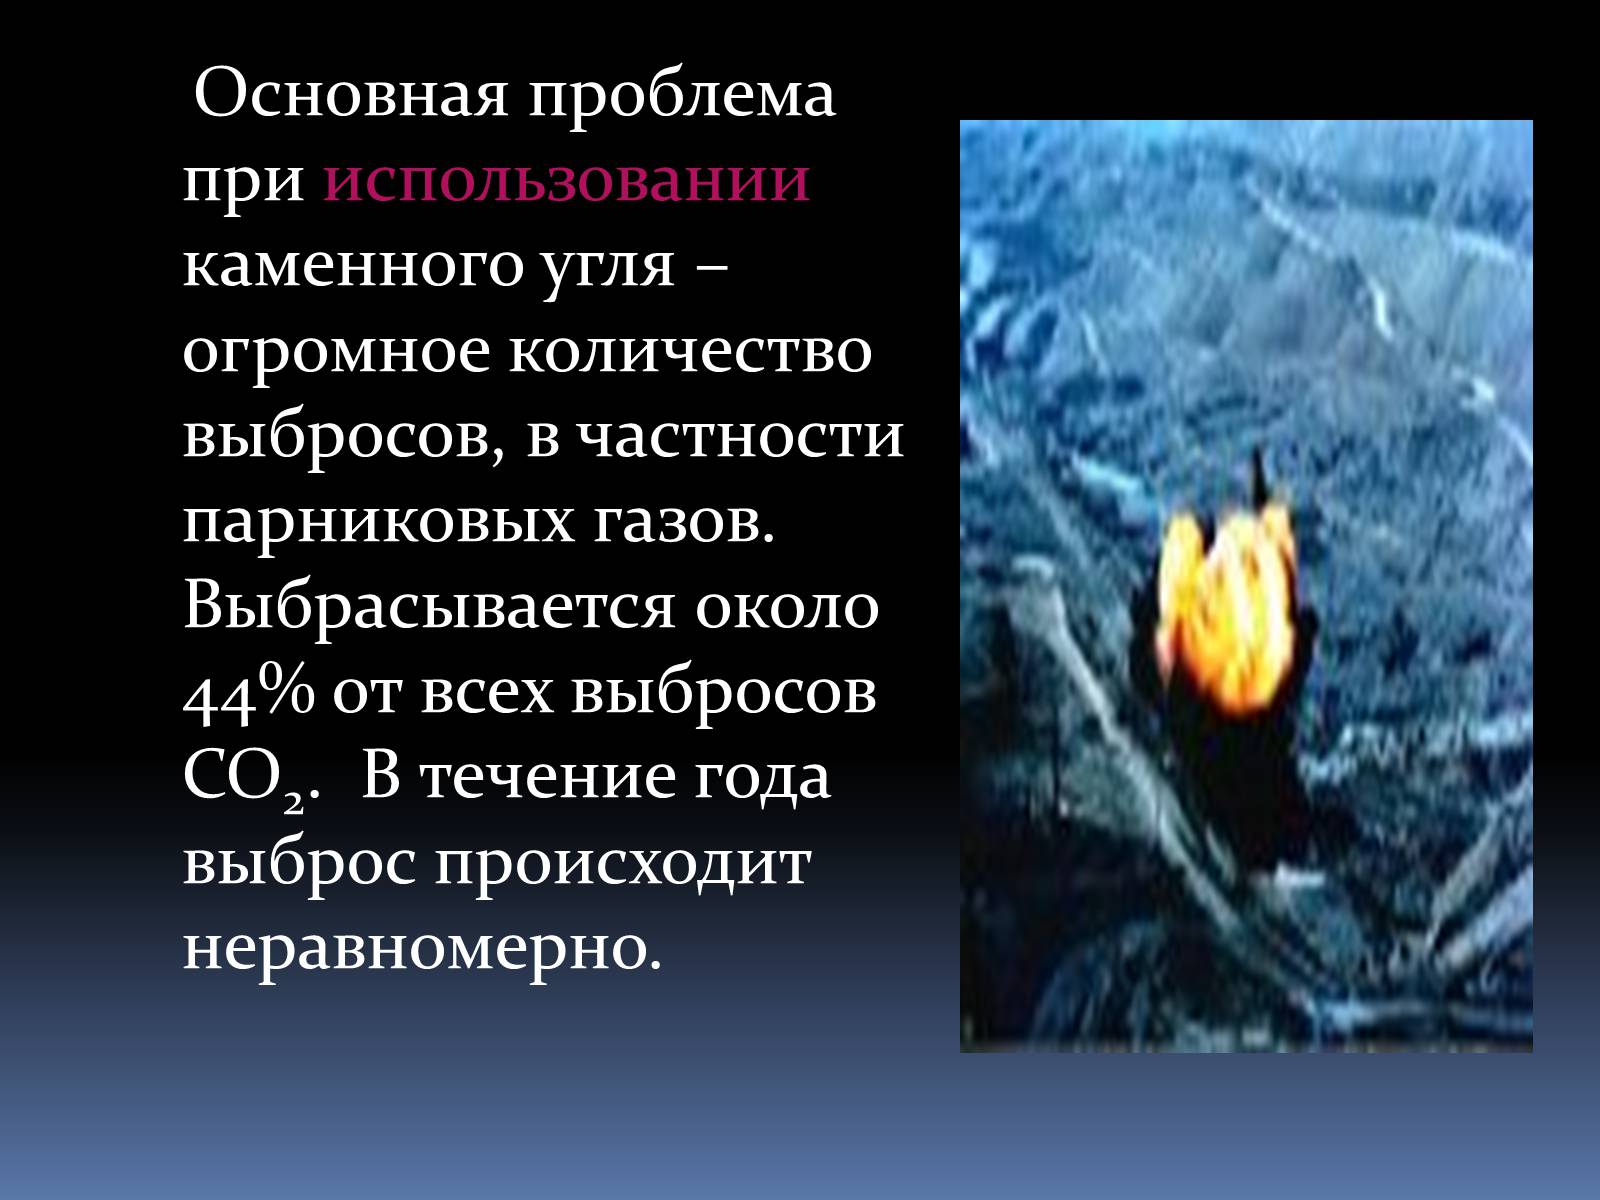 Влияние добычи угля на окружающую среду. Экологические проблемы угля. Экологические проблемы каменного угля. Экологические проблемы добычи каменного угля. Проблемы использования угля.